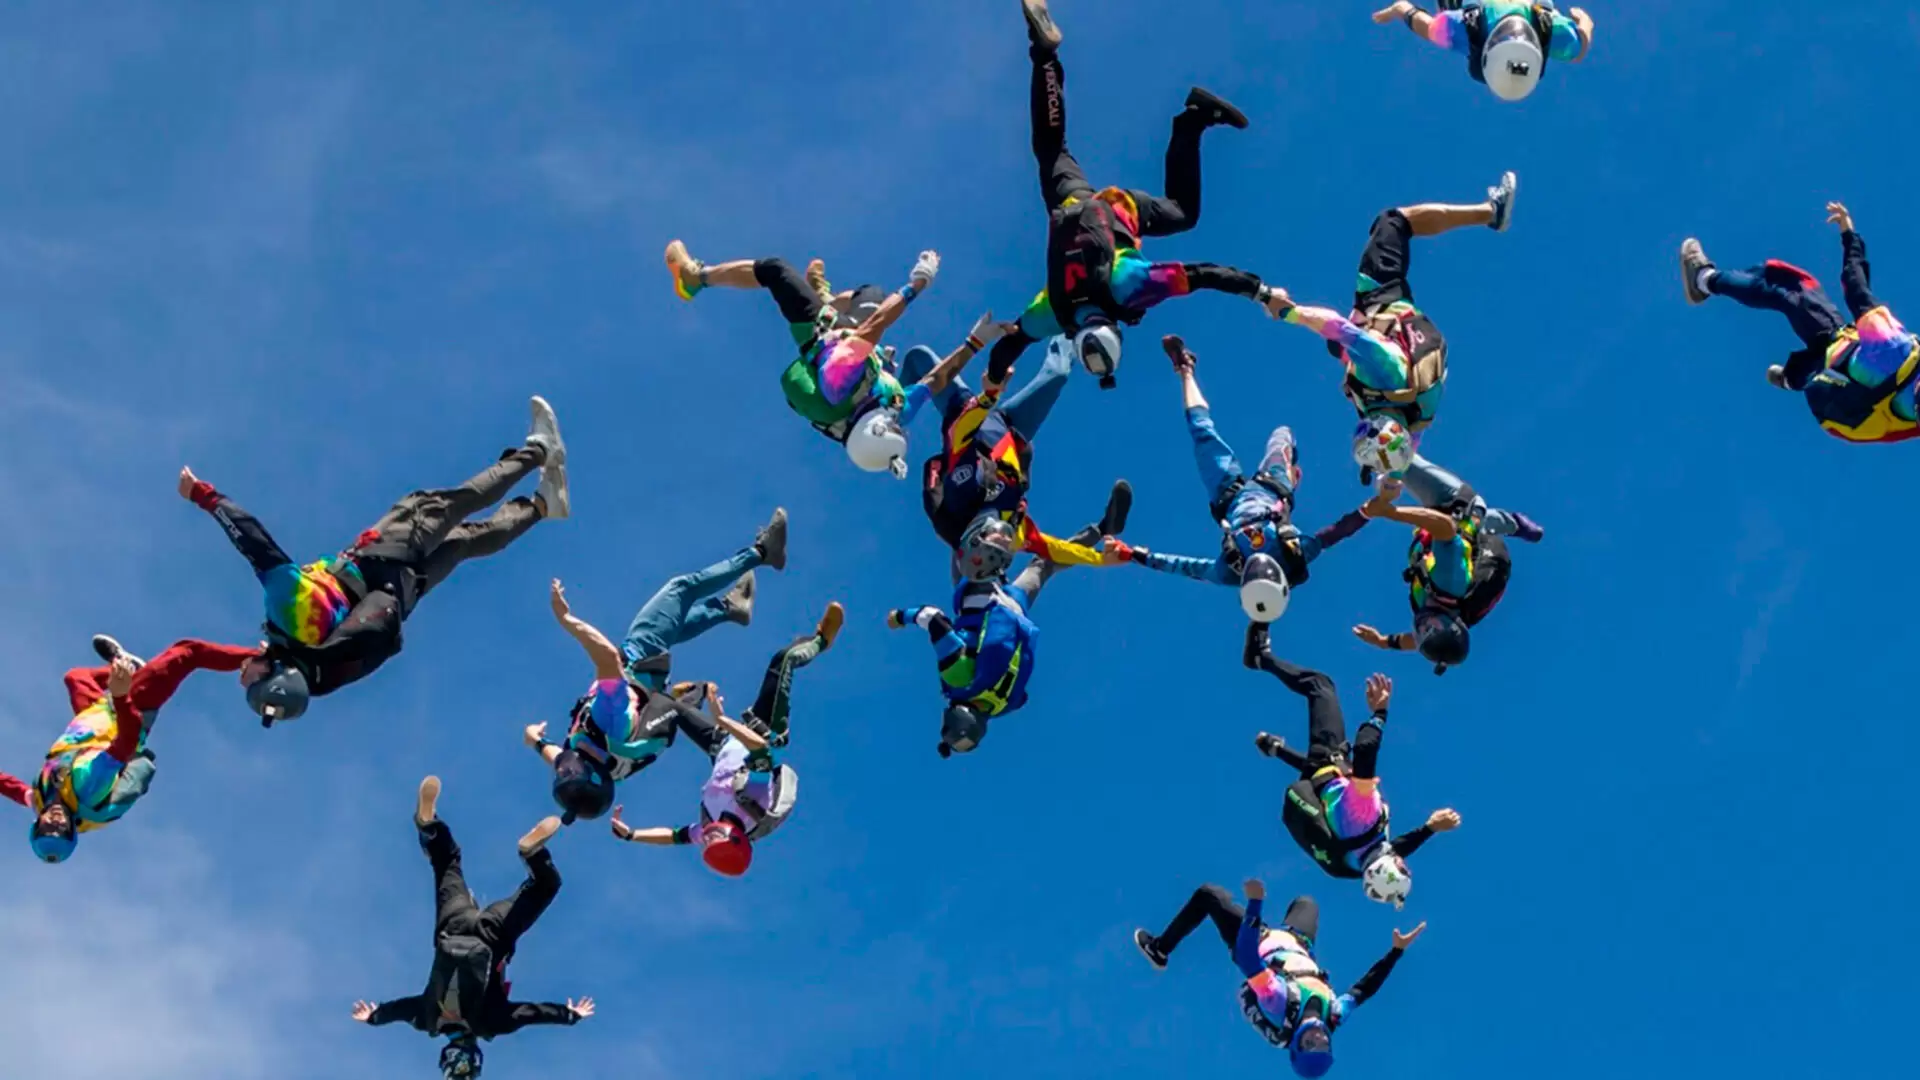 Paraquedismo um dos esportes radicais mais praticados no Brasil